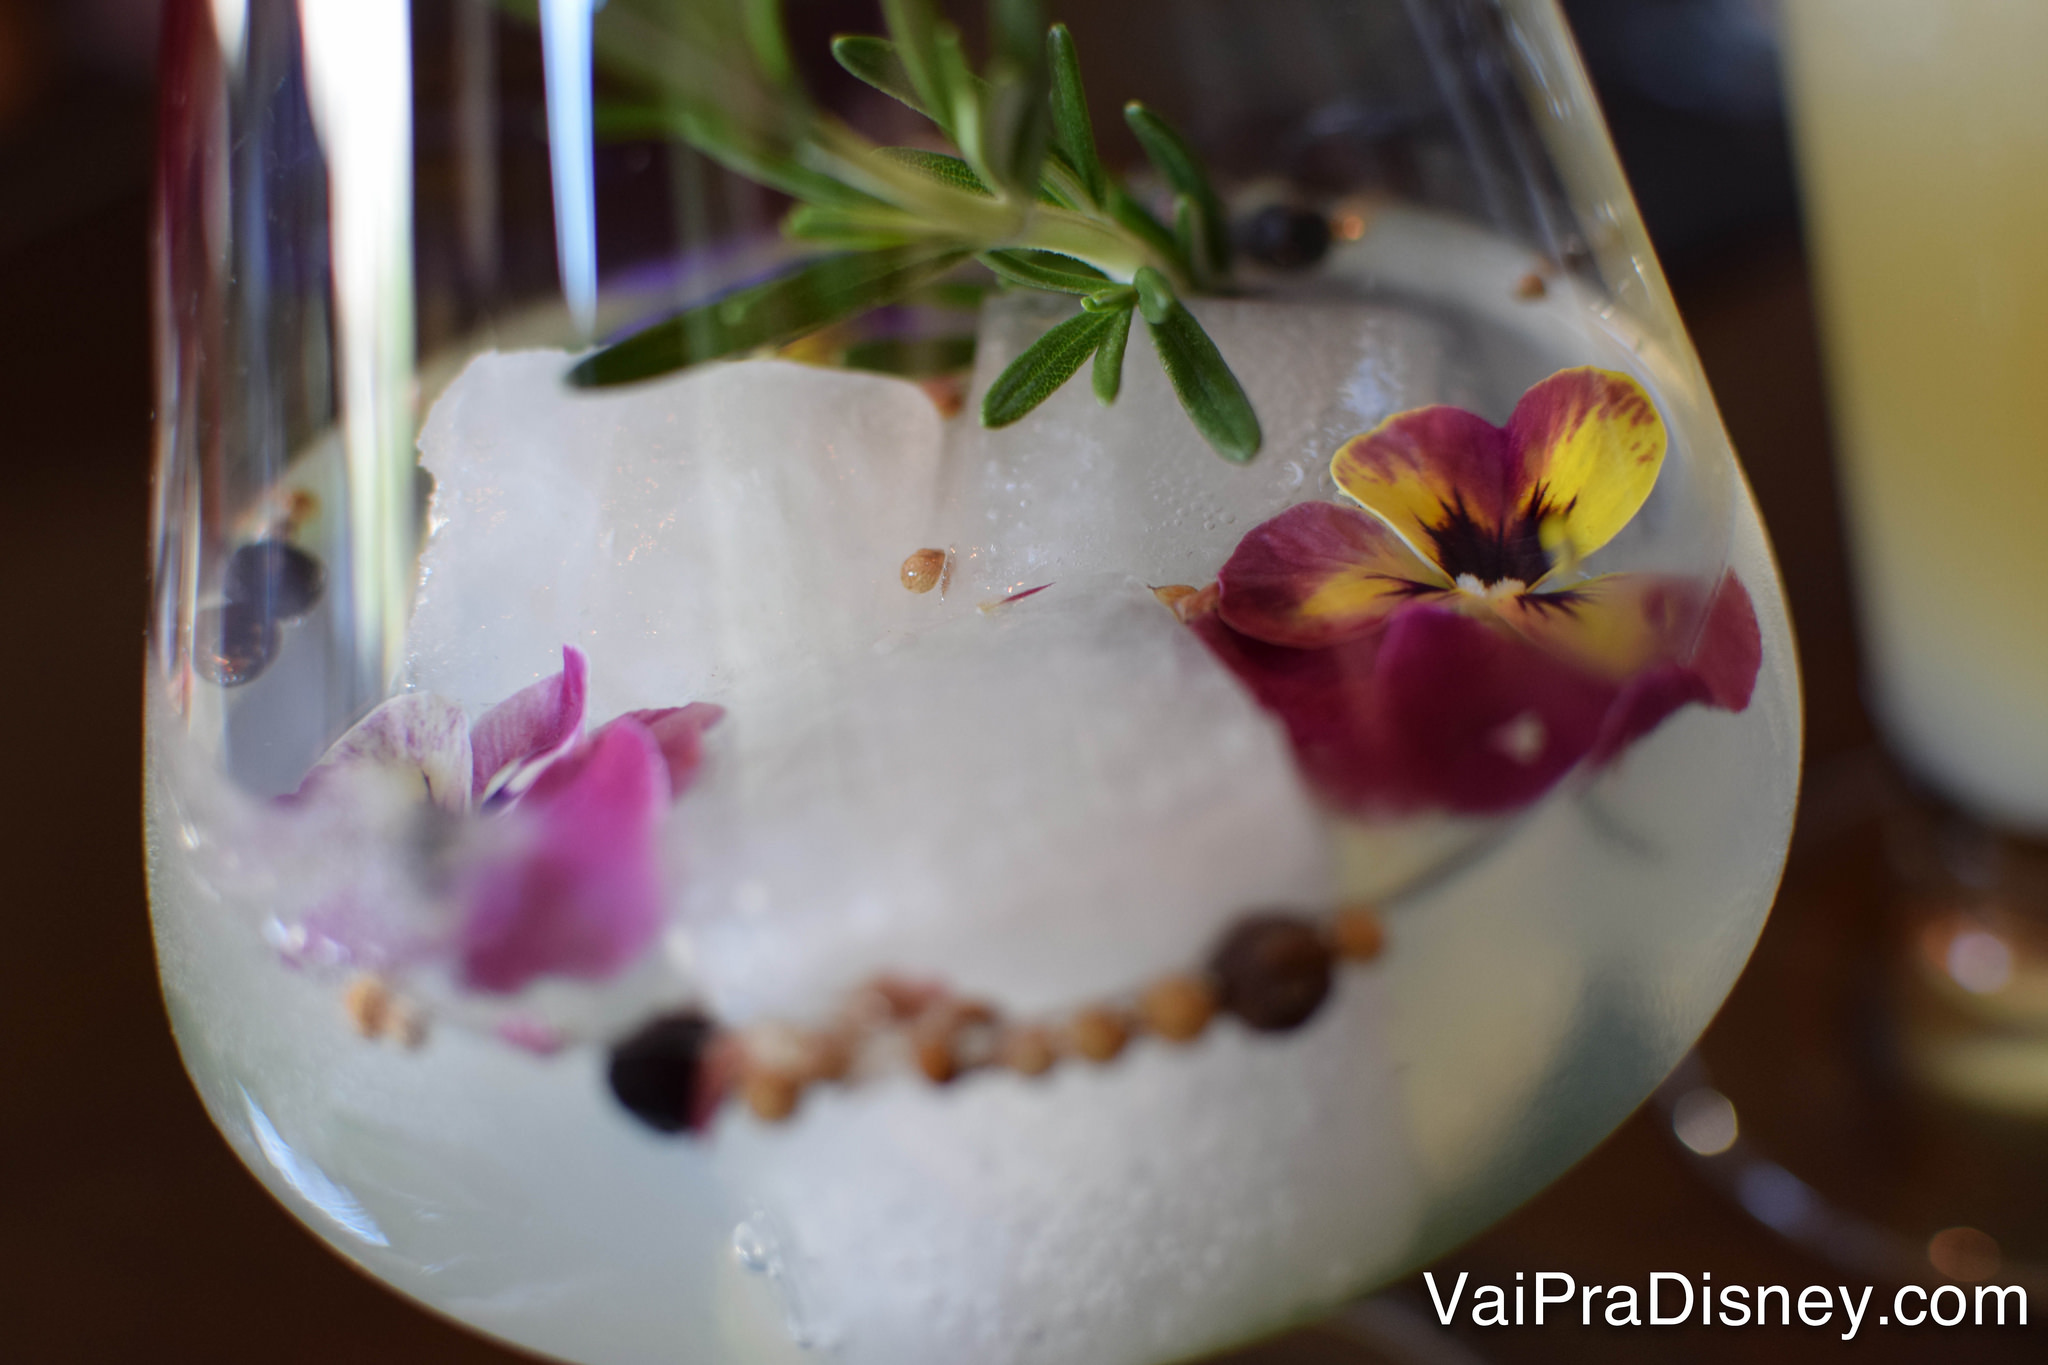 Um drinque servido com flores decorativas em uma taça arredondada 